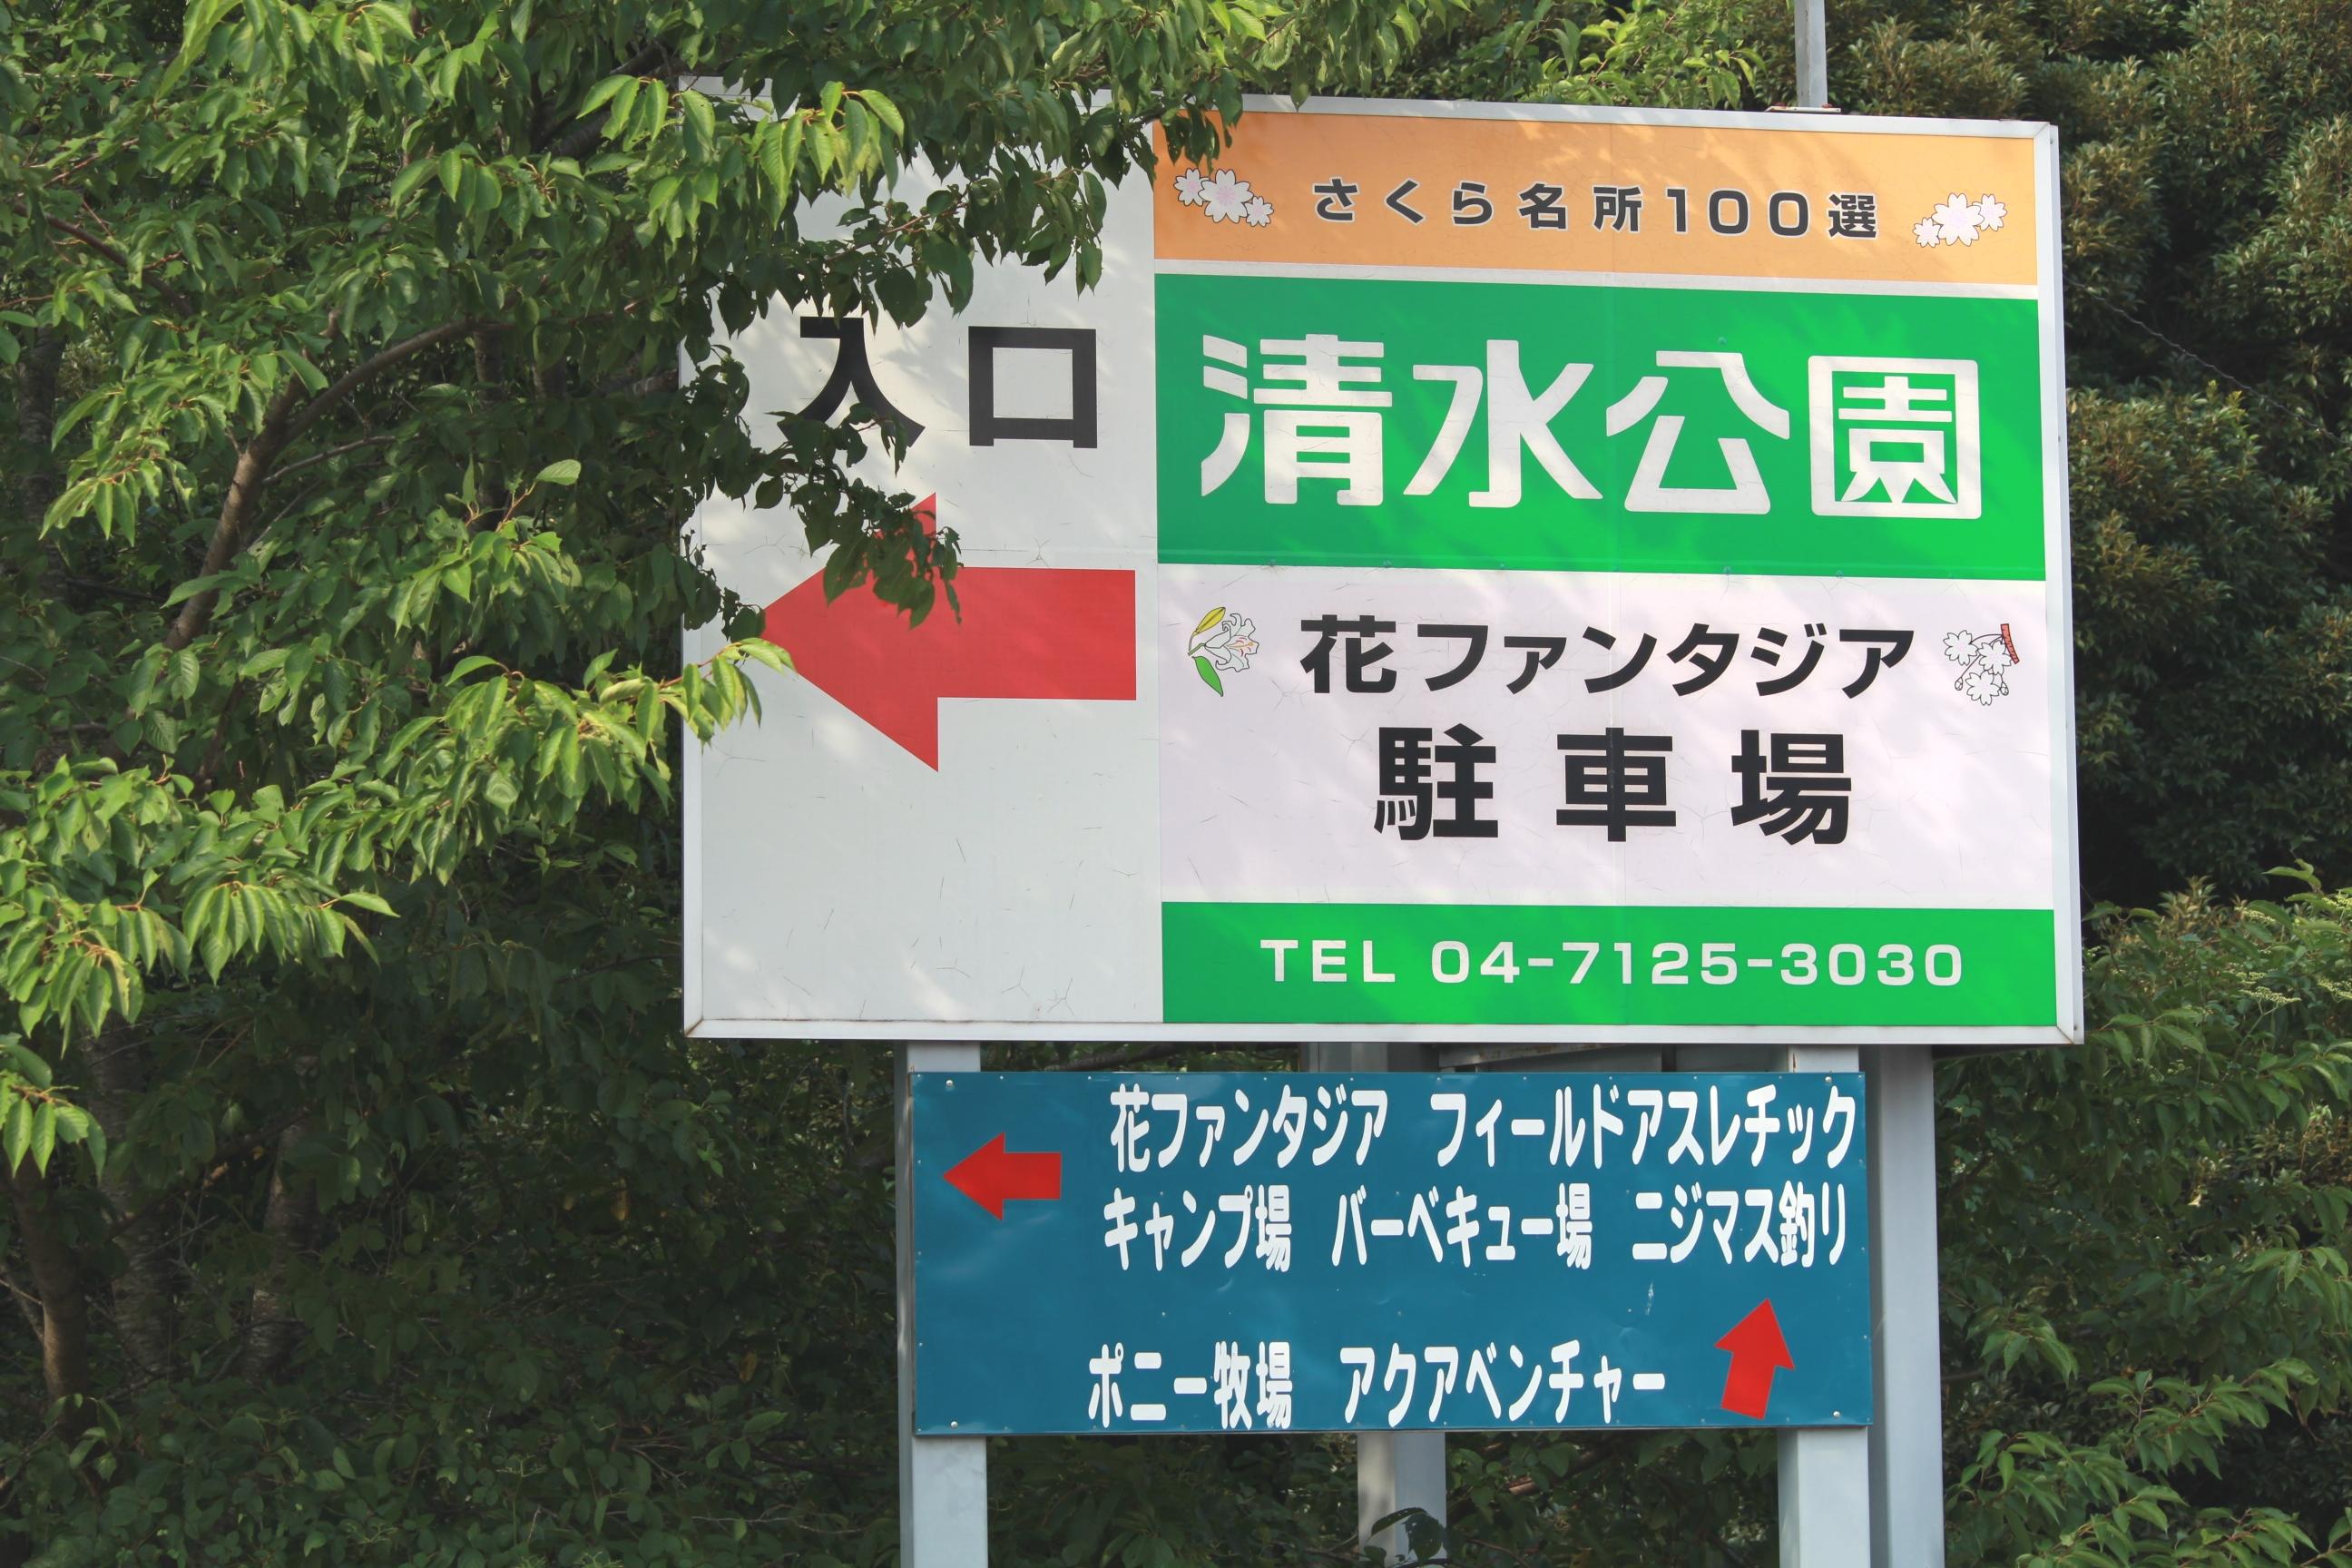 今回の会場は千葉県野田市の清水公園。